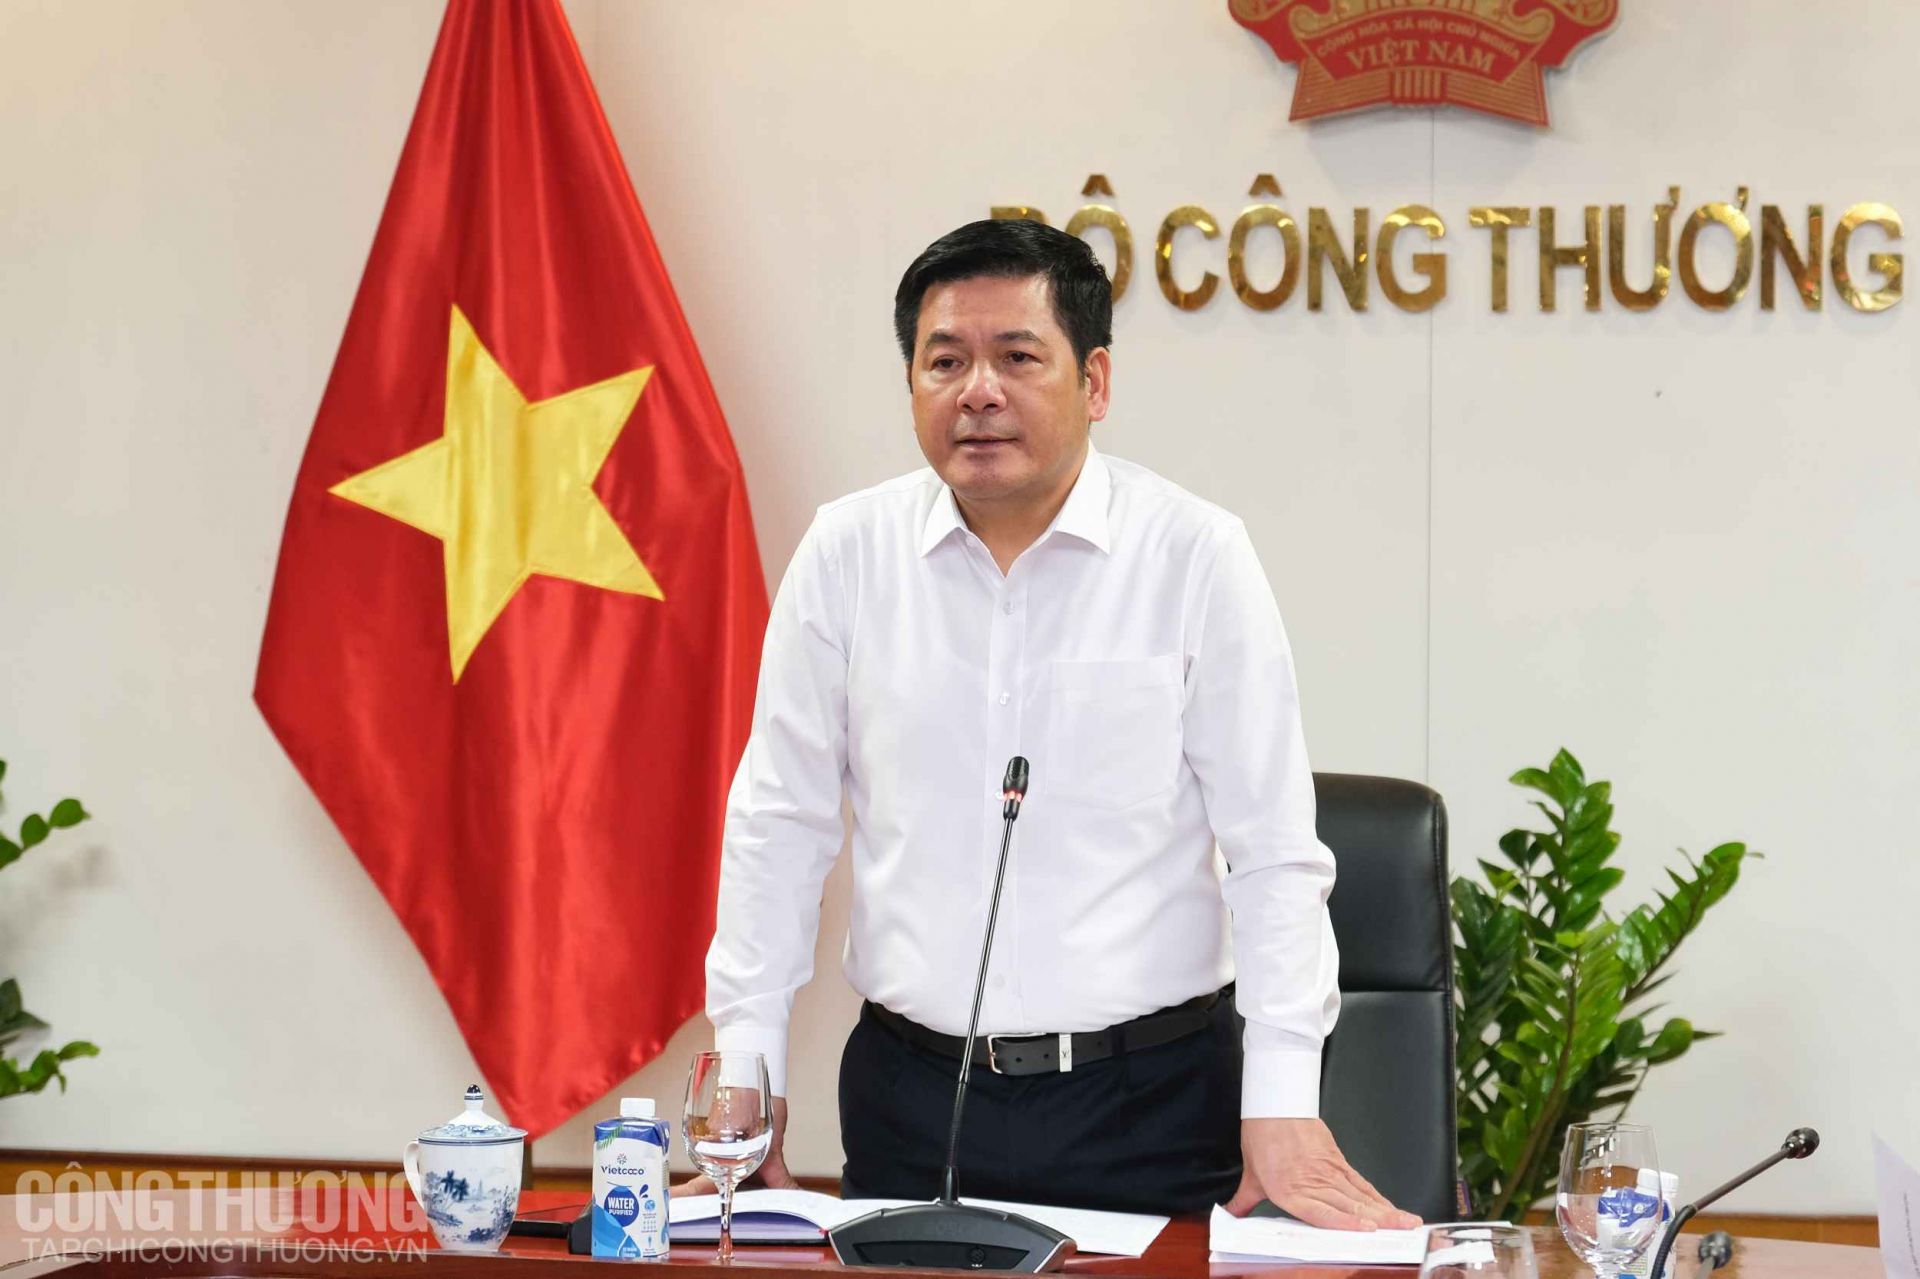 Bộ trưởng Nguyễn Hồng Diên đề nghị các doanh nghiệp nhà nước khẩn trương xem xét để xuất dự trữ thương mại, bổ sung nguồn cung xăng dầu cho hệ thống của mình và 'ứng cứu' cho một số địa bàn đang thiếu hụt cục bộ